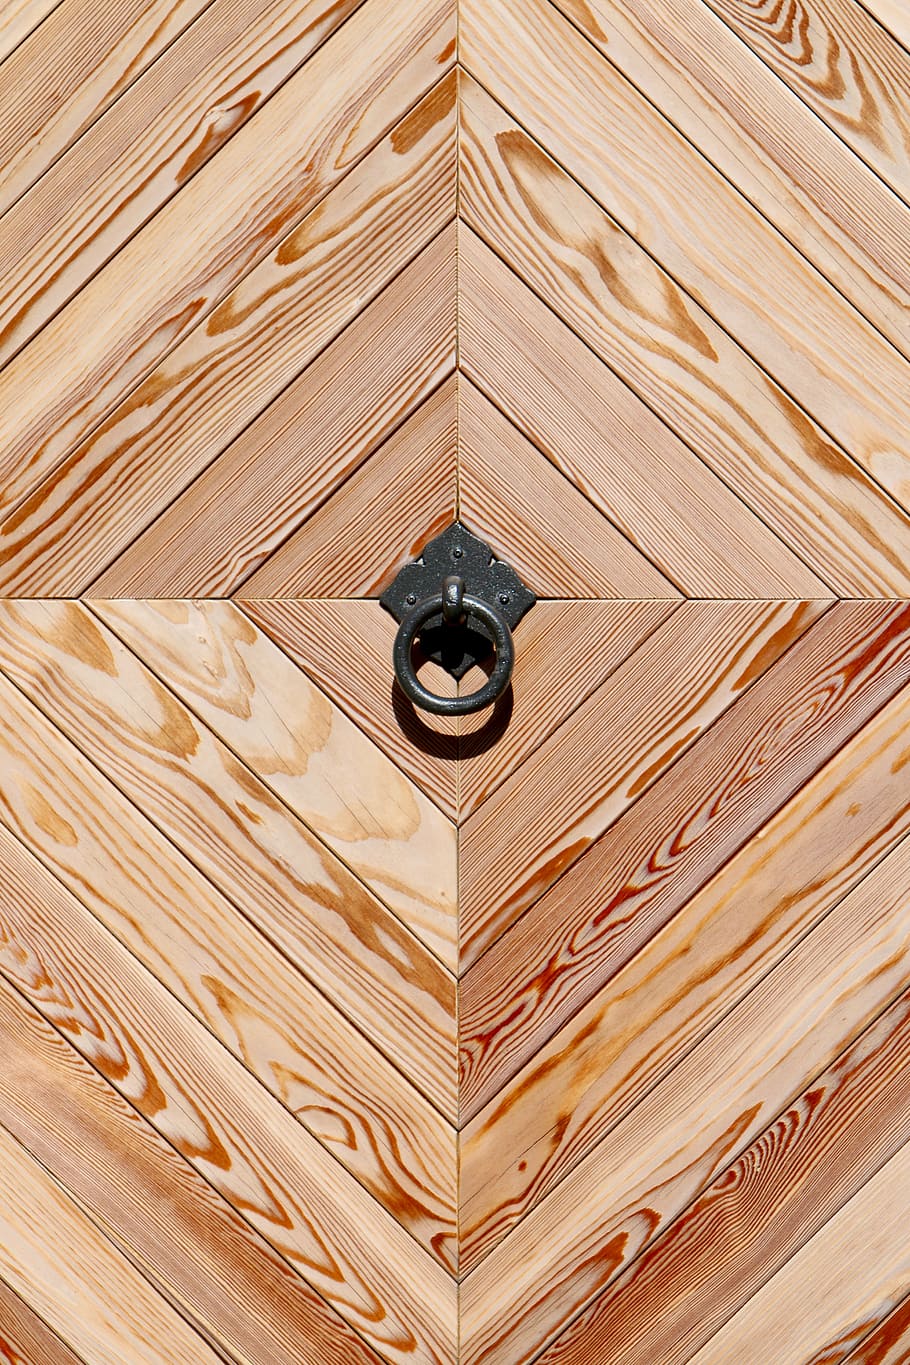 puerta de madera, llamada en espera, forma geométrica, madera - material, patrón, marrón, fondos, fotograma completo, sin gente, texturado